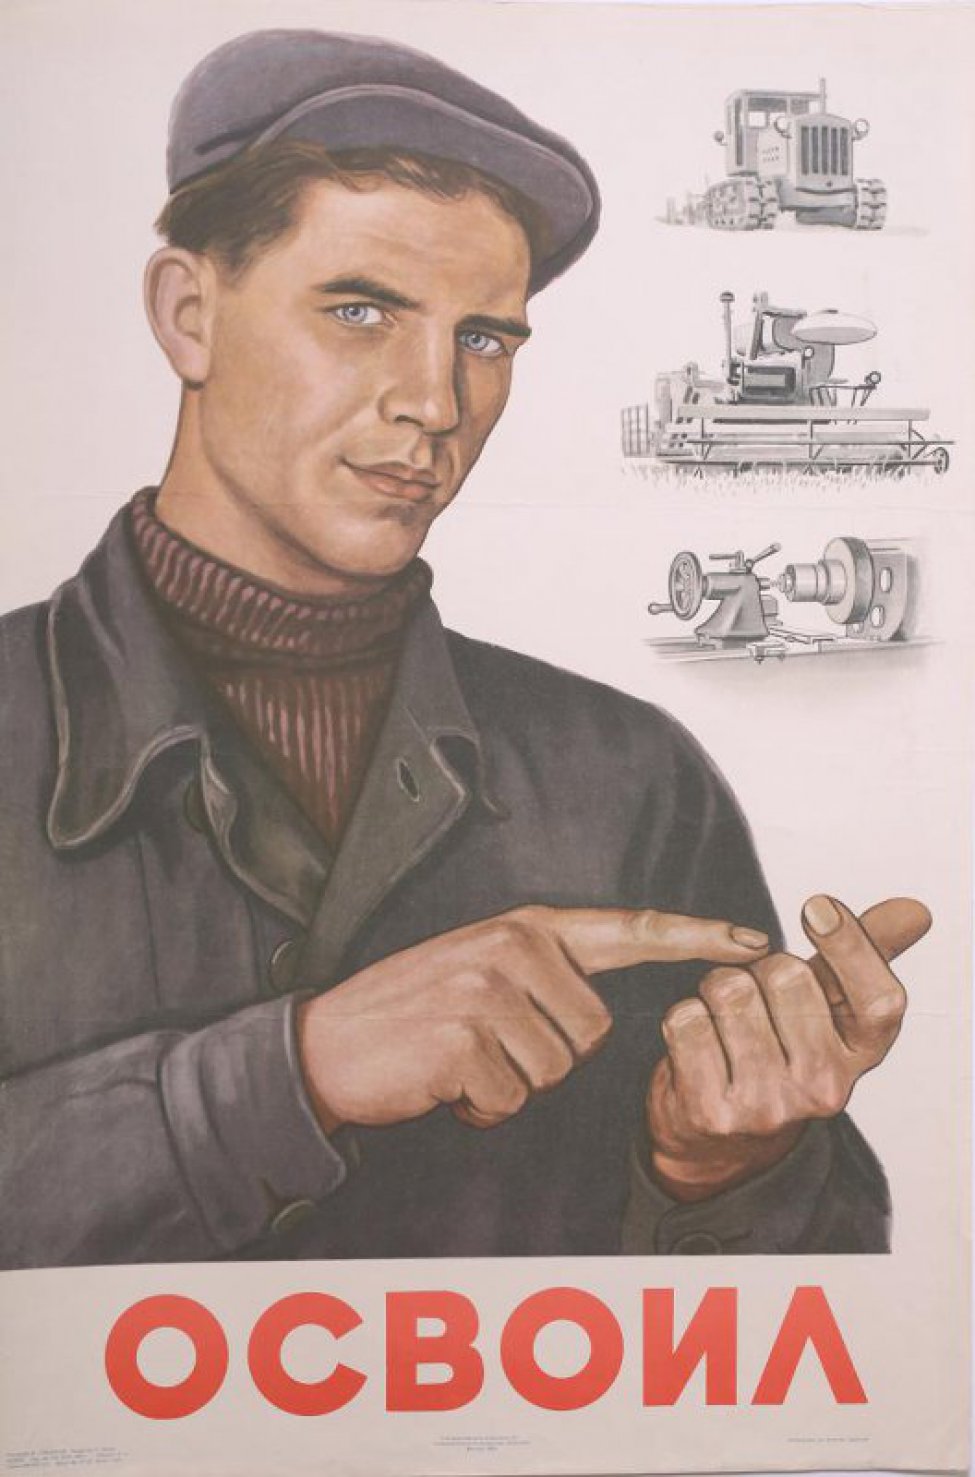 Изображен молодой рабочий в кепке и черной куртке. Он считает на пальцах. Справа вверху изображены: трактор, комбайн, станок.